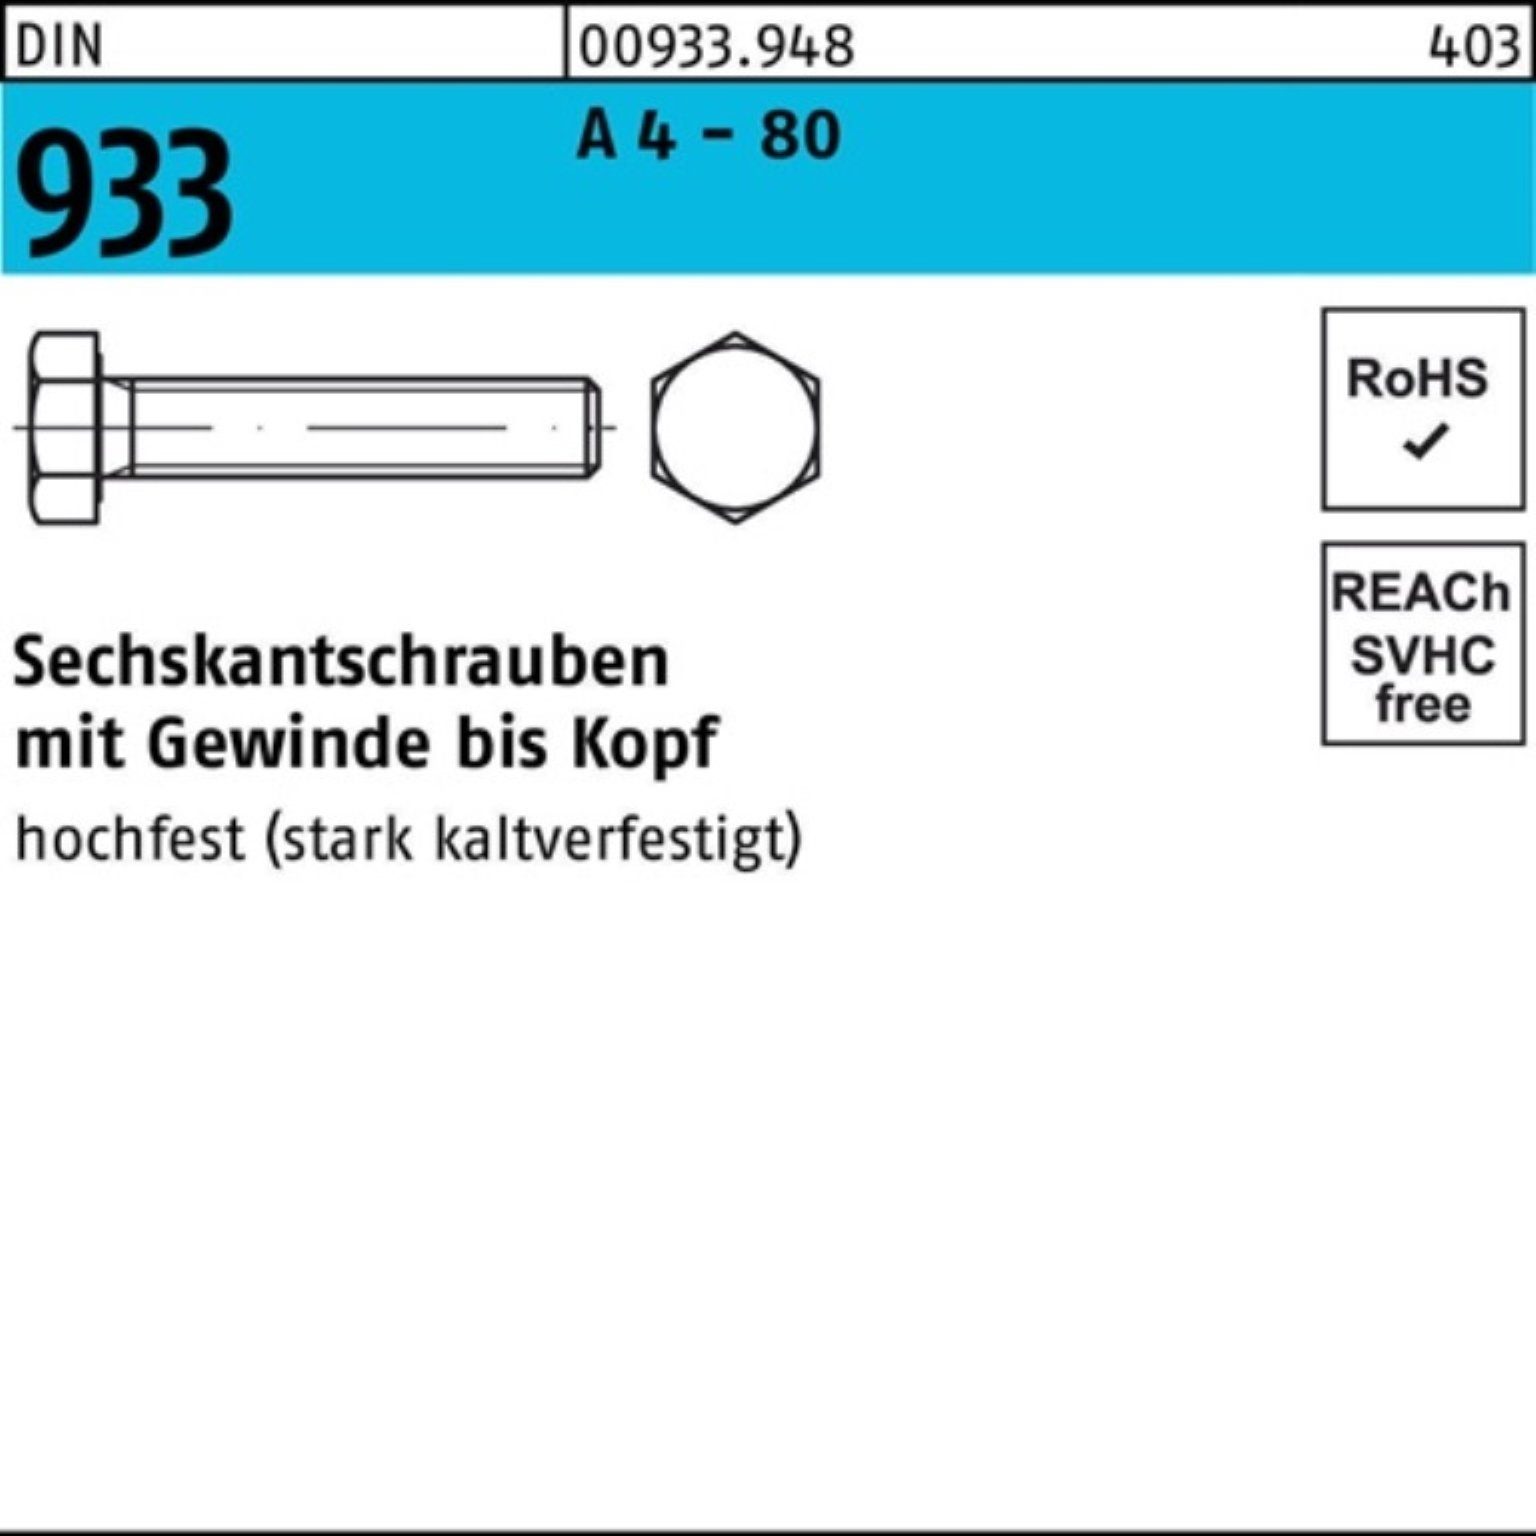 Reyher Sechskantschraube 100er Pack Sechskantschraube DIN 933 VG M8x 140 A 4 - 80 1 Stück DIN